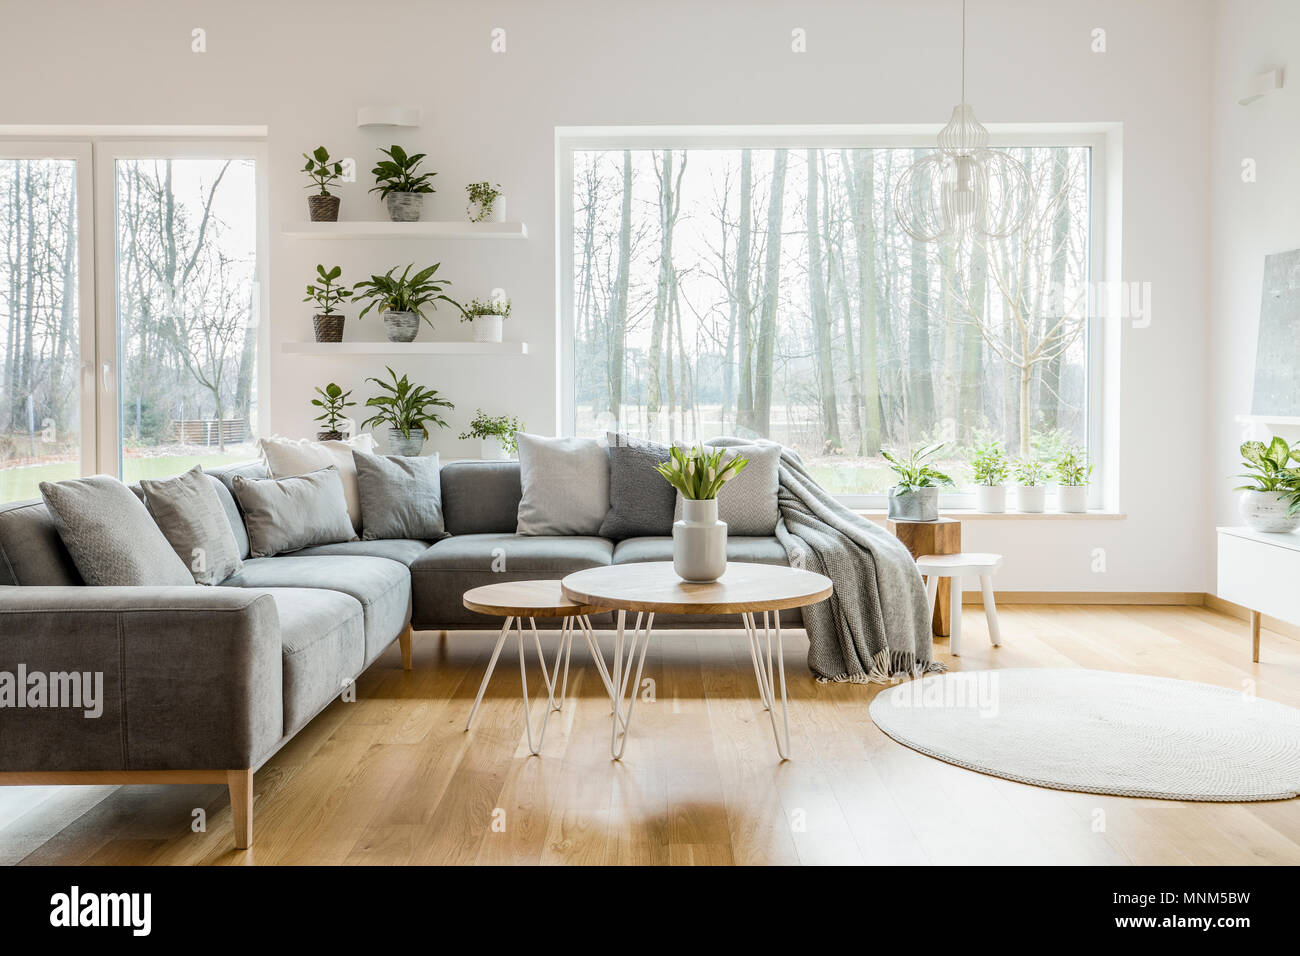 Piante sugli scaffali accanto a una finestra natural living room interior con angolo grigio divano e tavolo Foto Stock